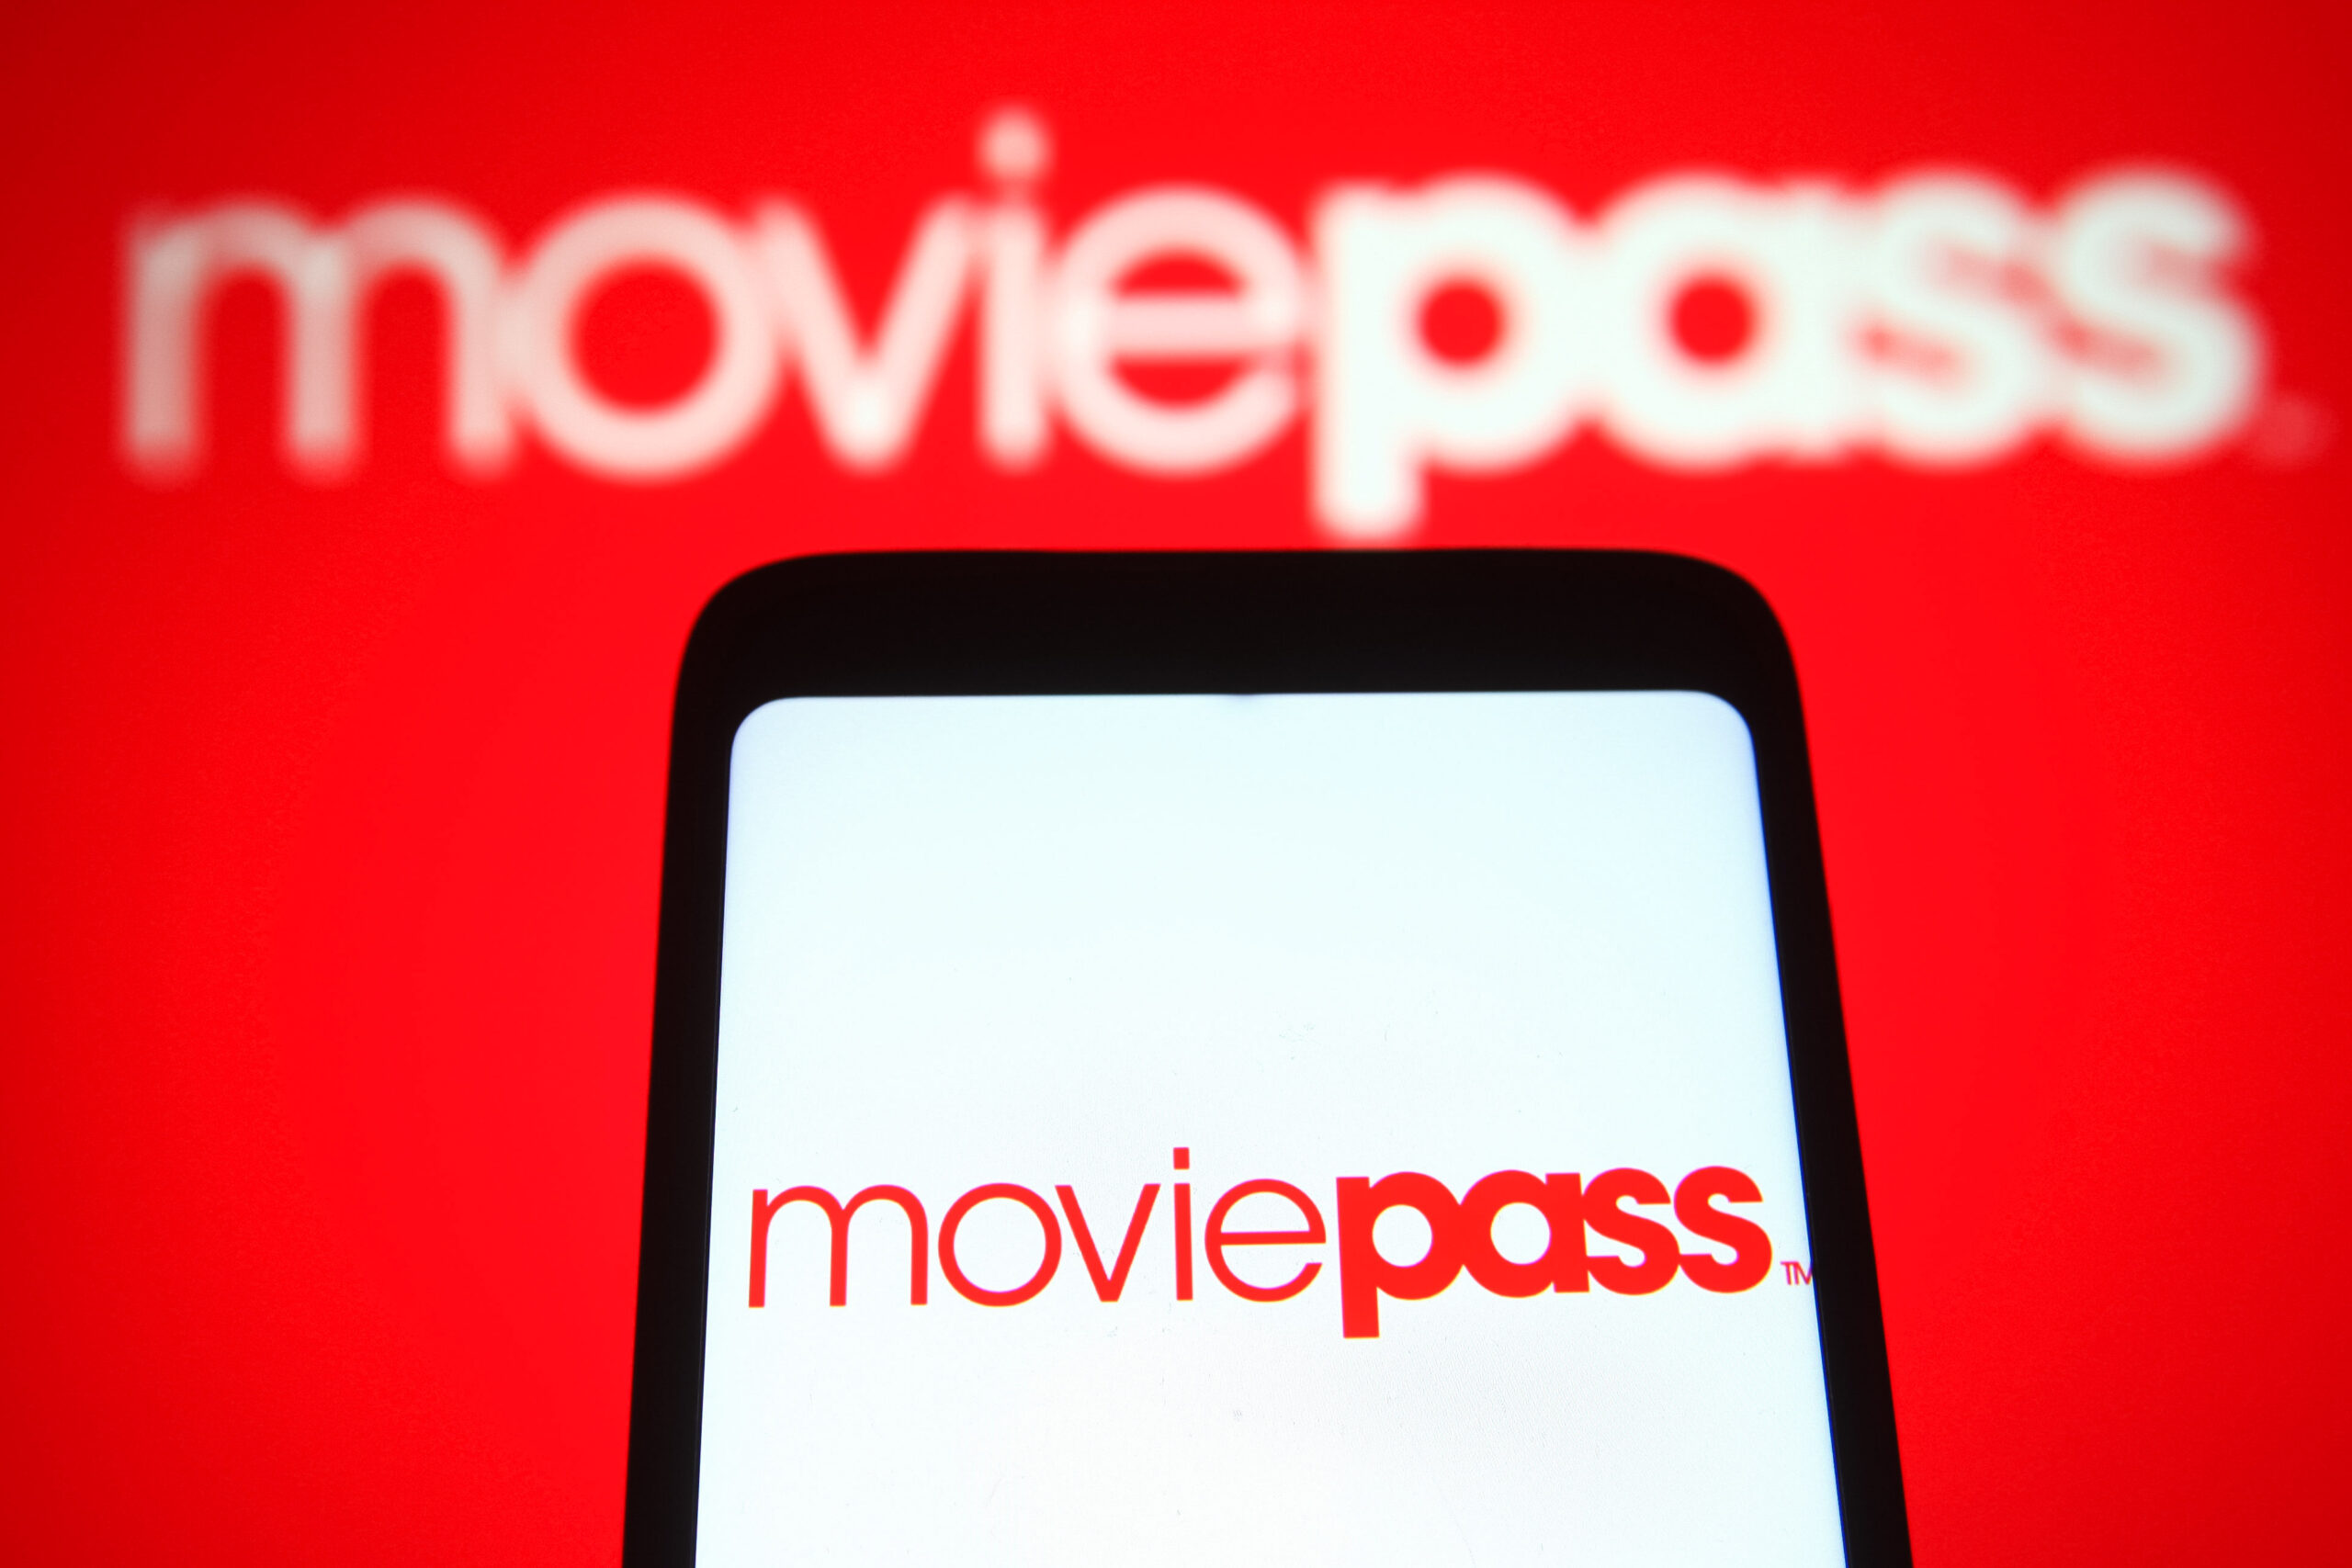 SEC kiện cựu giám đốc điều hành MoviePass về tội gian lận